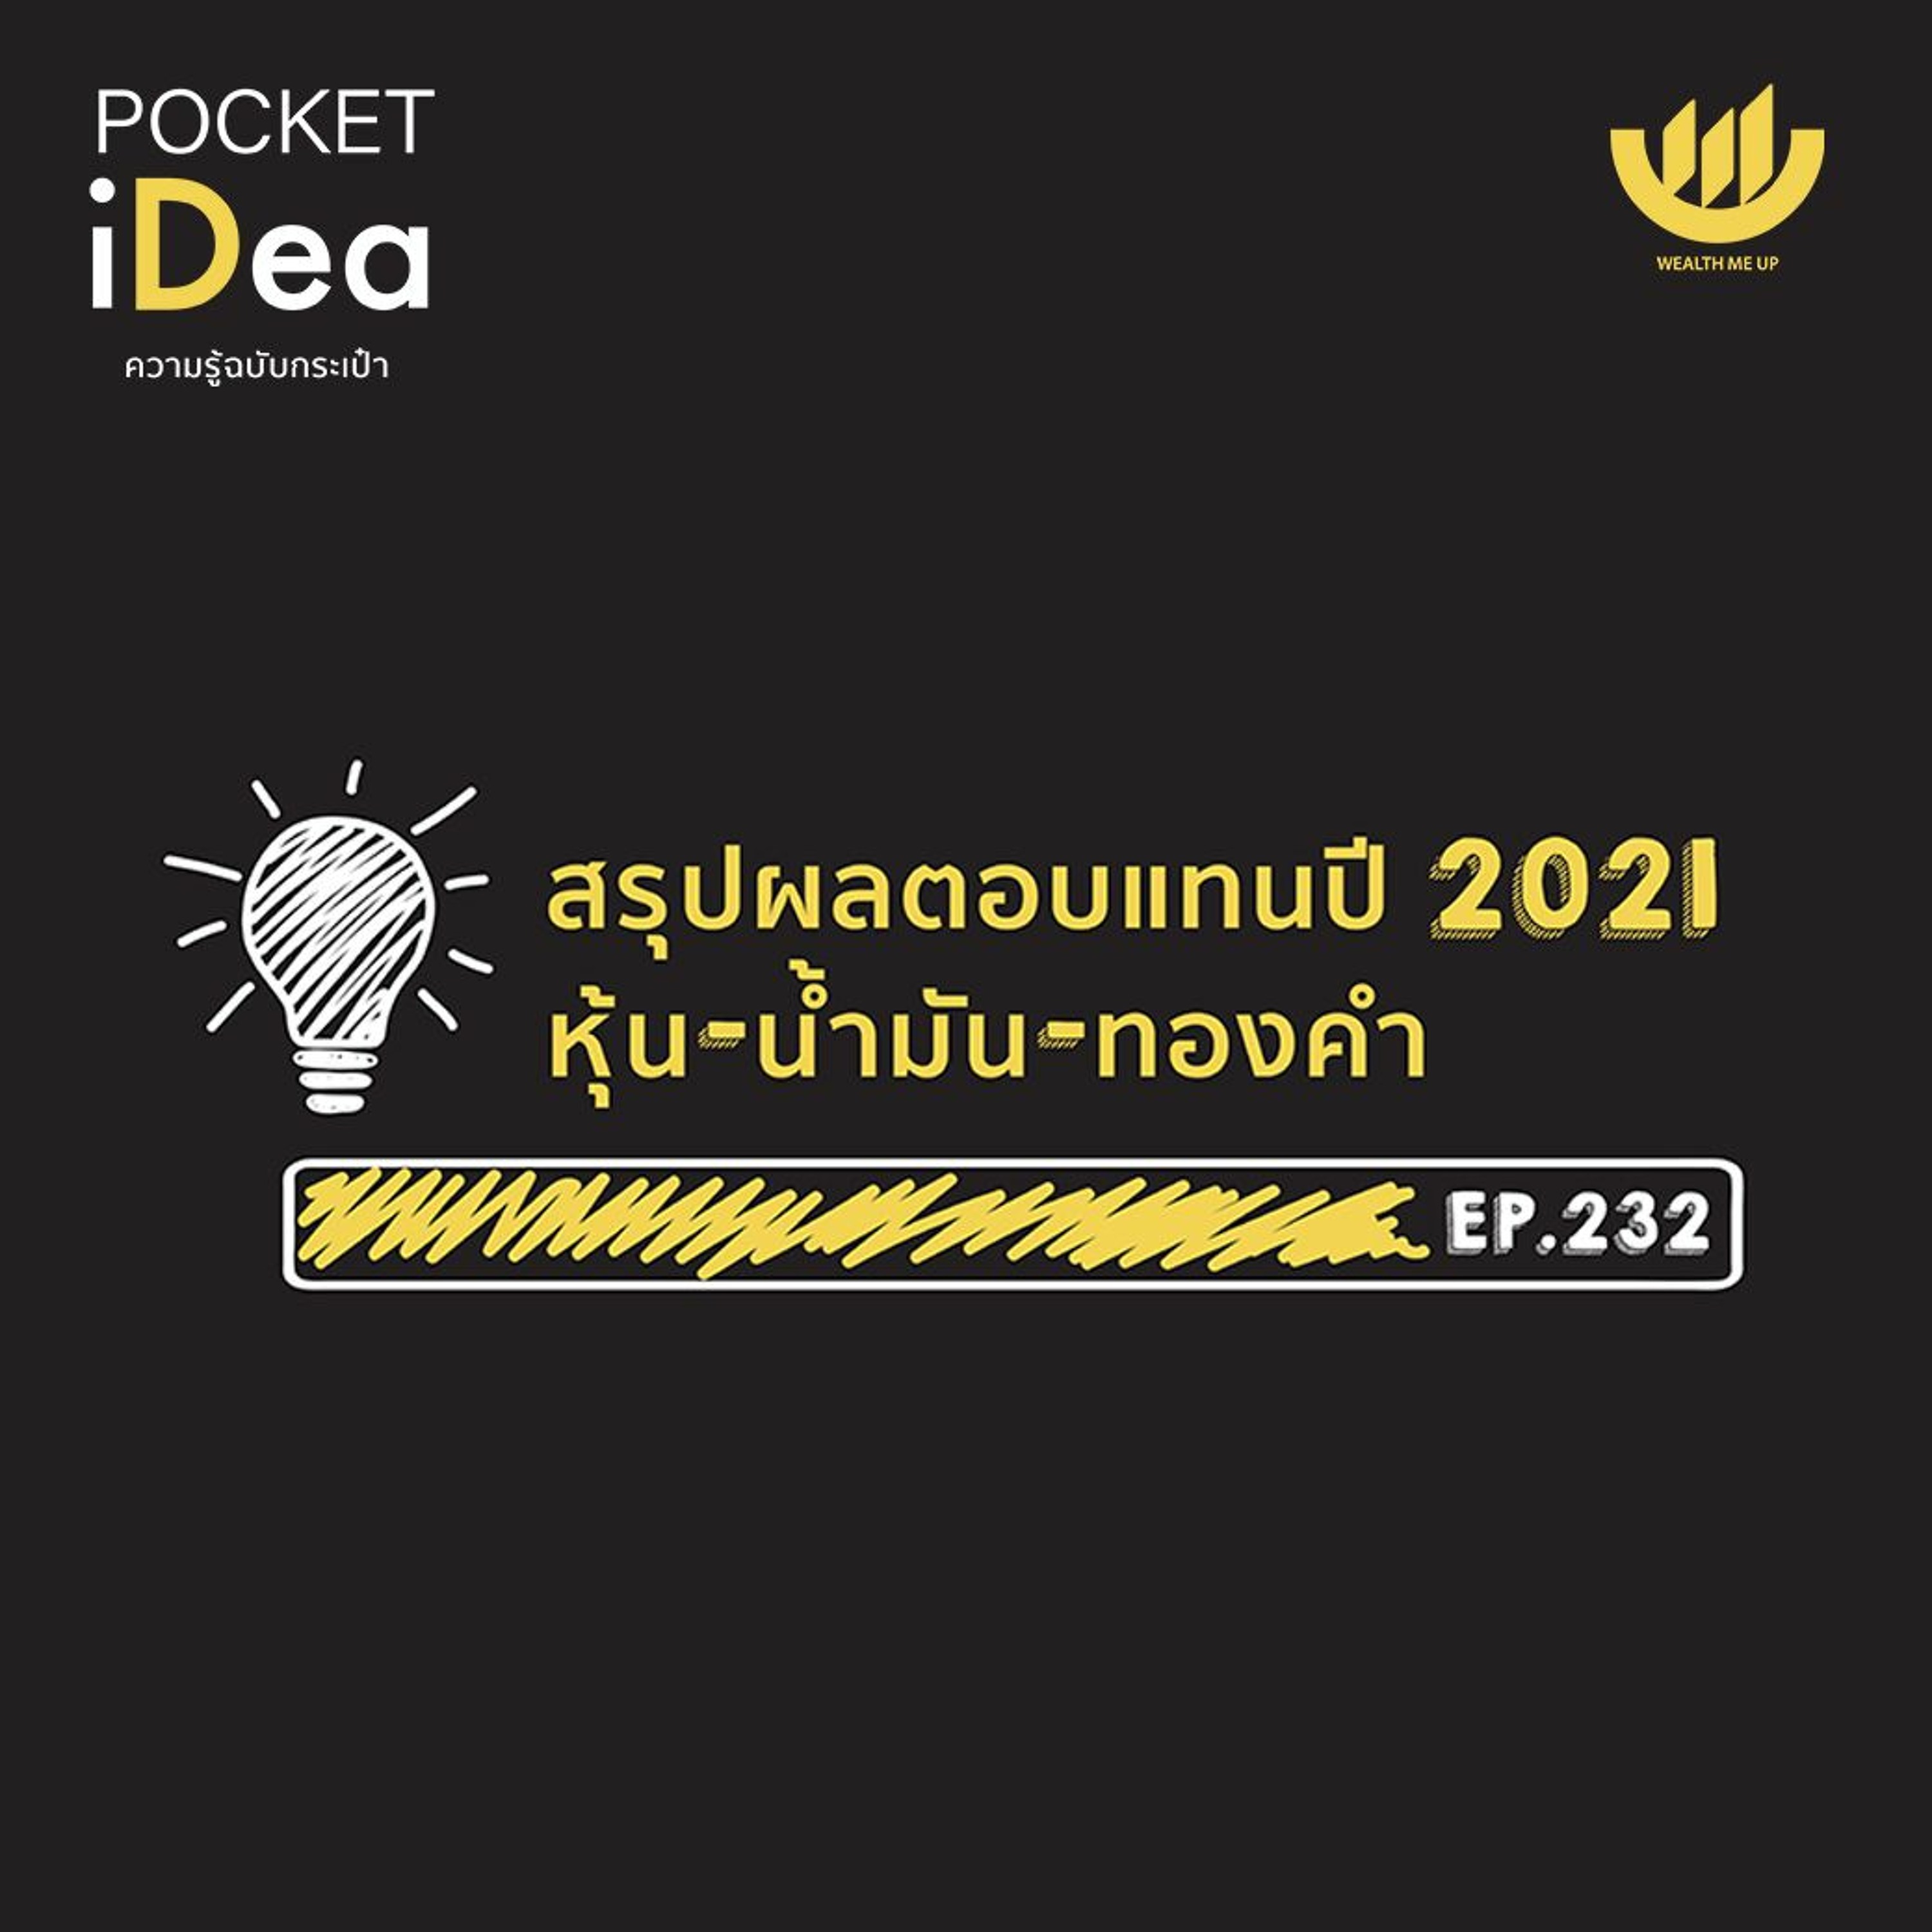 POCKET IDEA EP.232 | สรุปผลตอบแทนปี 2021 หุ้น - น้ำมัน - ทองคำ